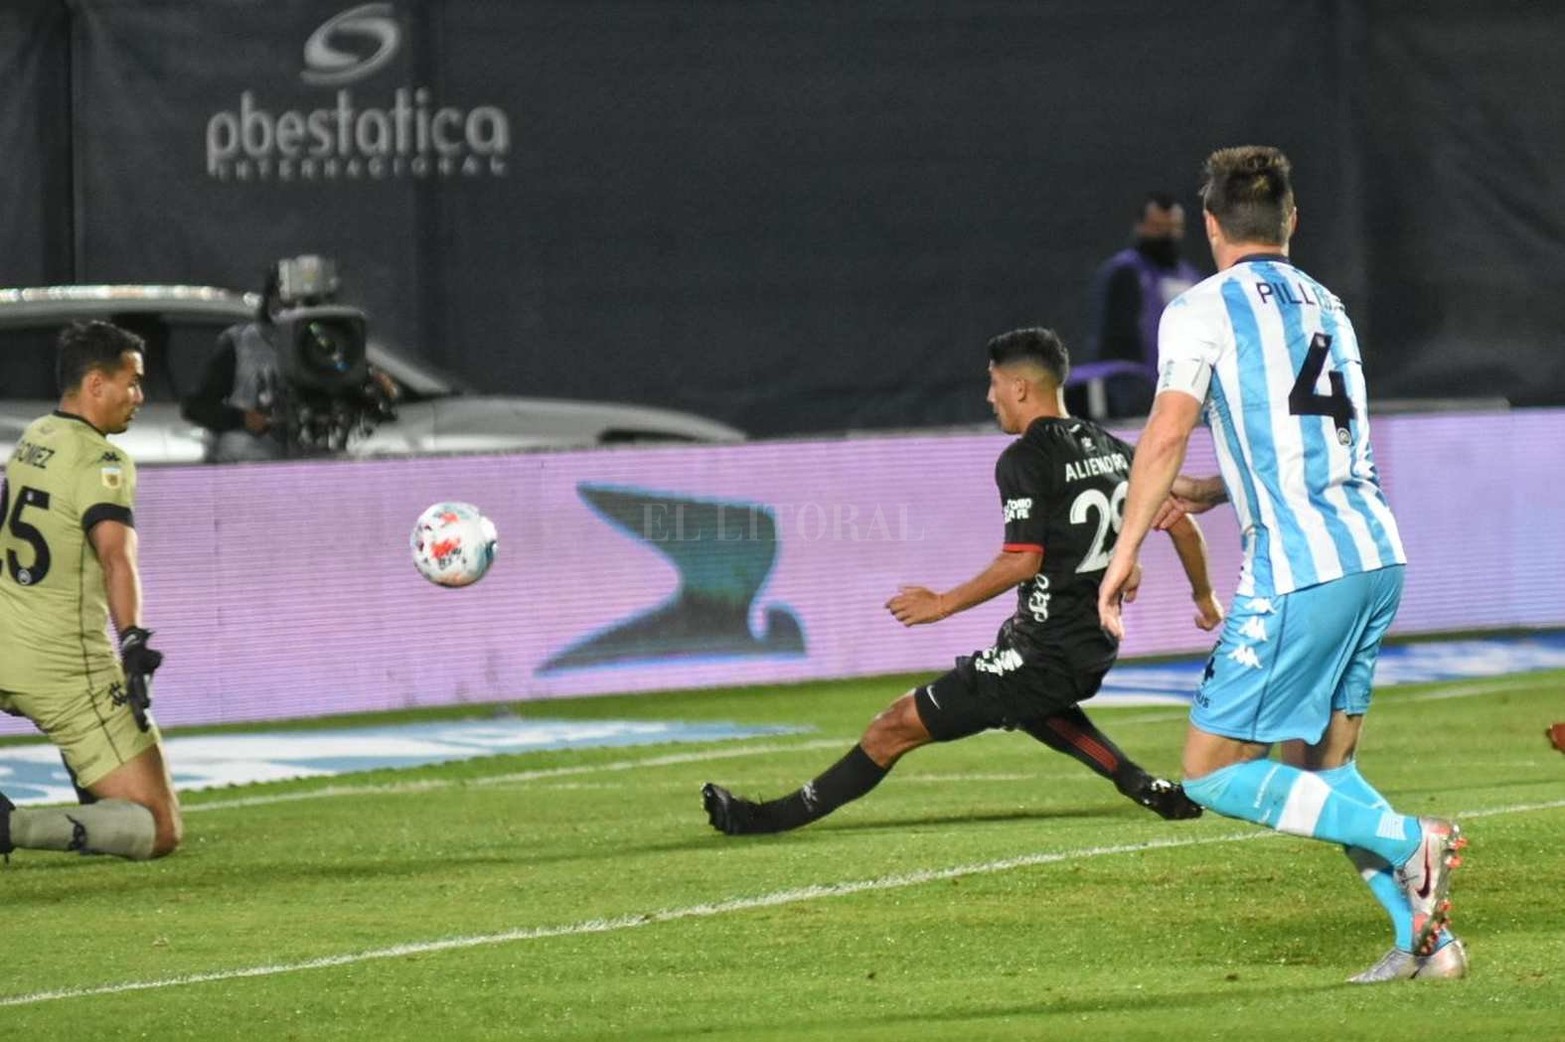 El gol que abrió el partido. Rodrigo Aliendro ya conectó el centro de Facundo Mura y la pelota tiene destino de red.